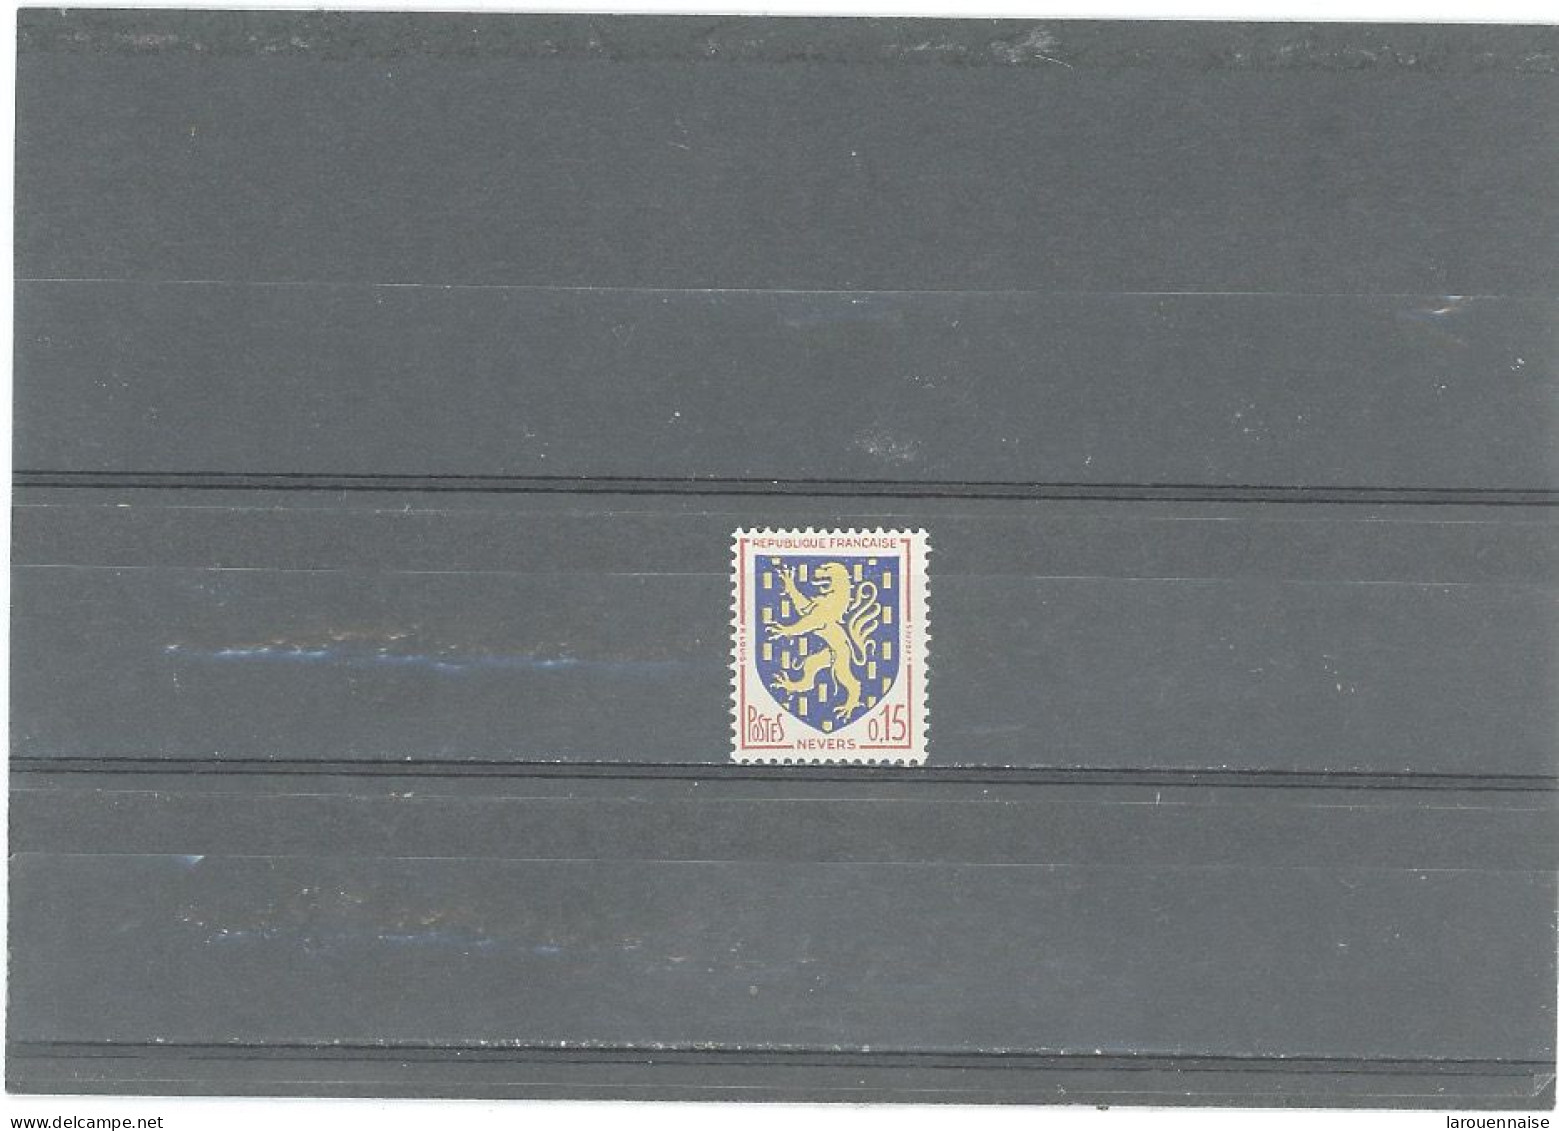 VARIÉTÉS -N°1354 N** 0,15 -ARMOIRIES DE NEVERS -LANGUE DU LION BLANCHE AU LIEU DE ROUGE - Unused Stamps